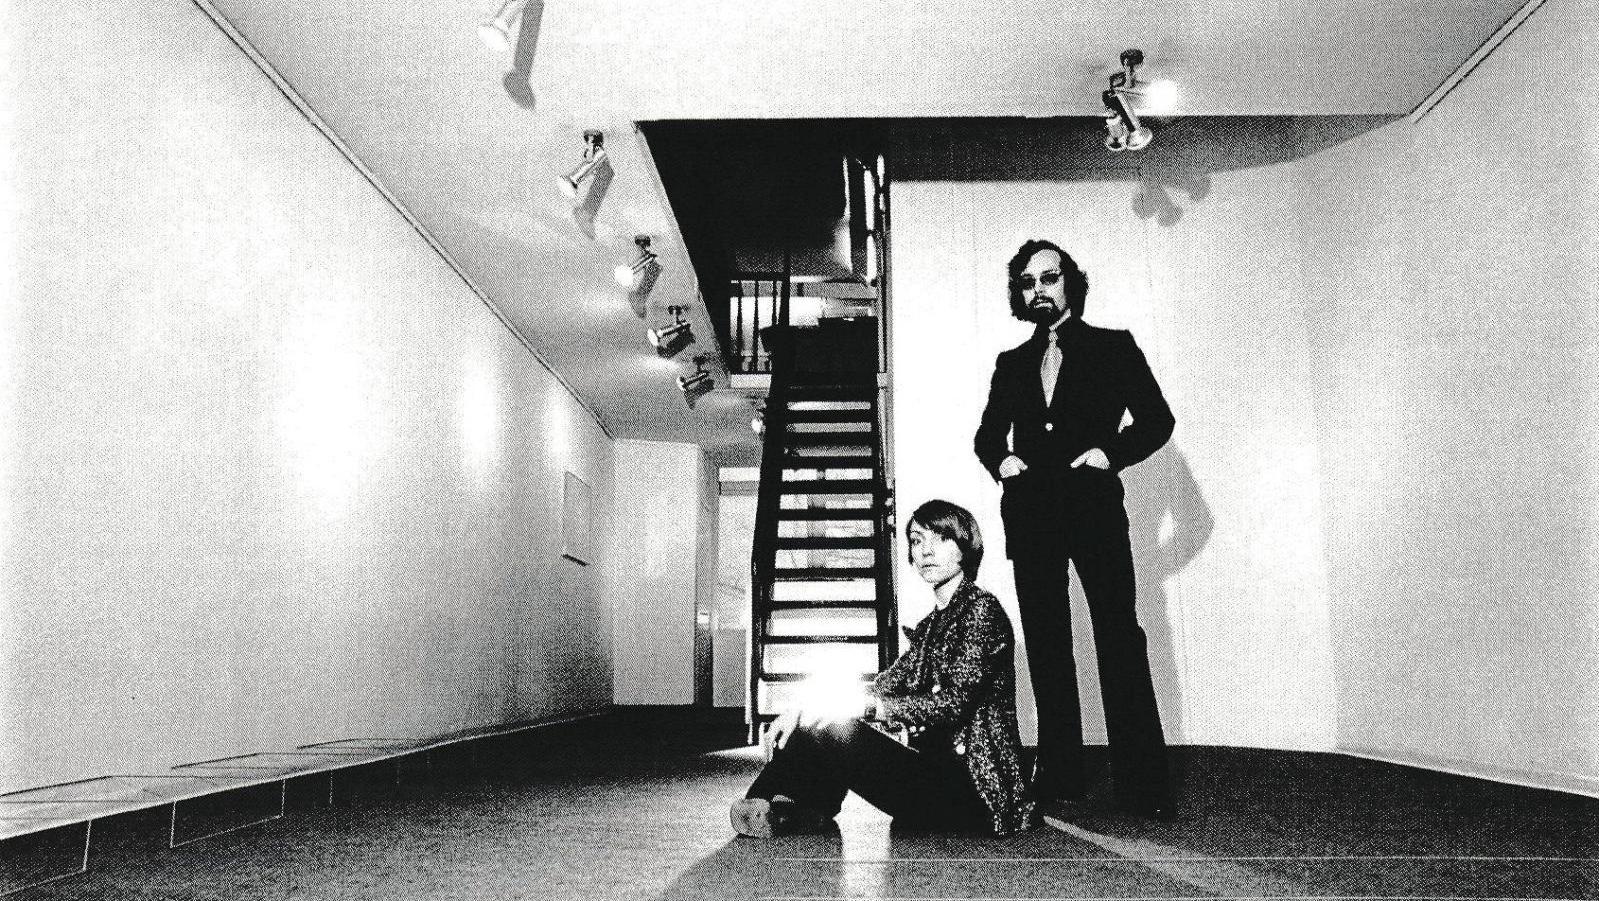 Les galeristes Annemarie et Gianfranco Verna en 1971.  Annemarie et Gianfranco Verna : des galeristes anti-système